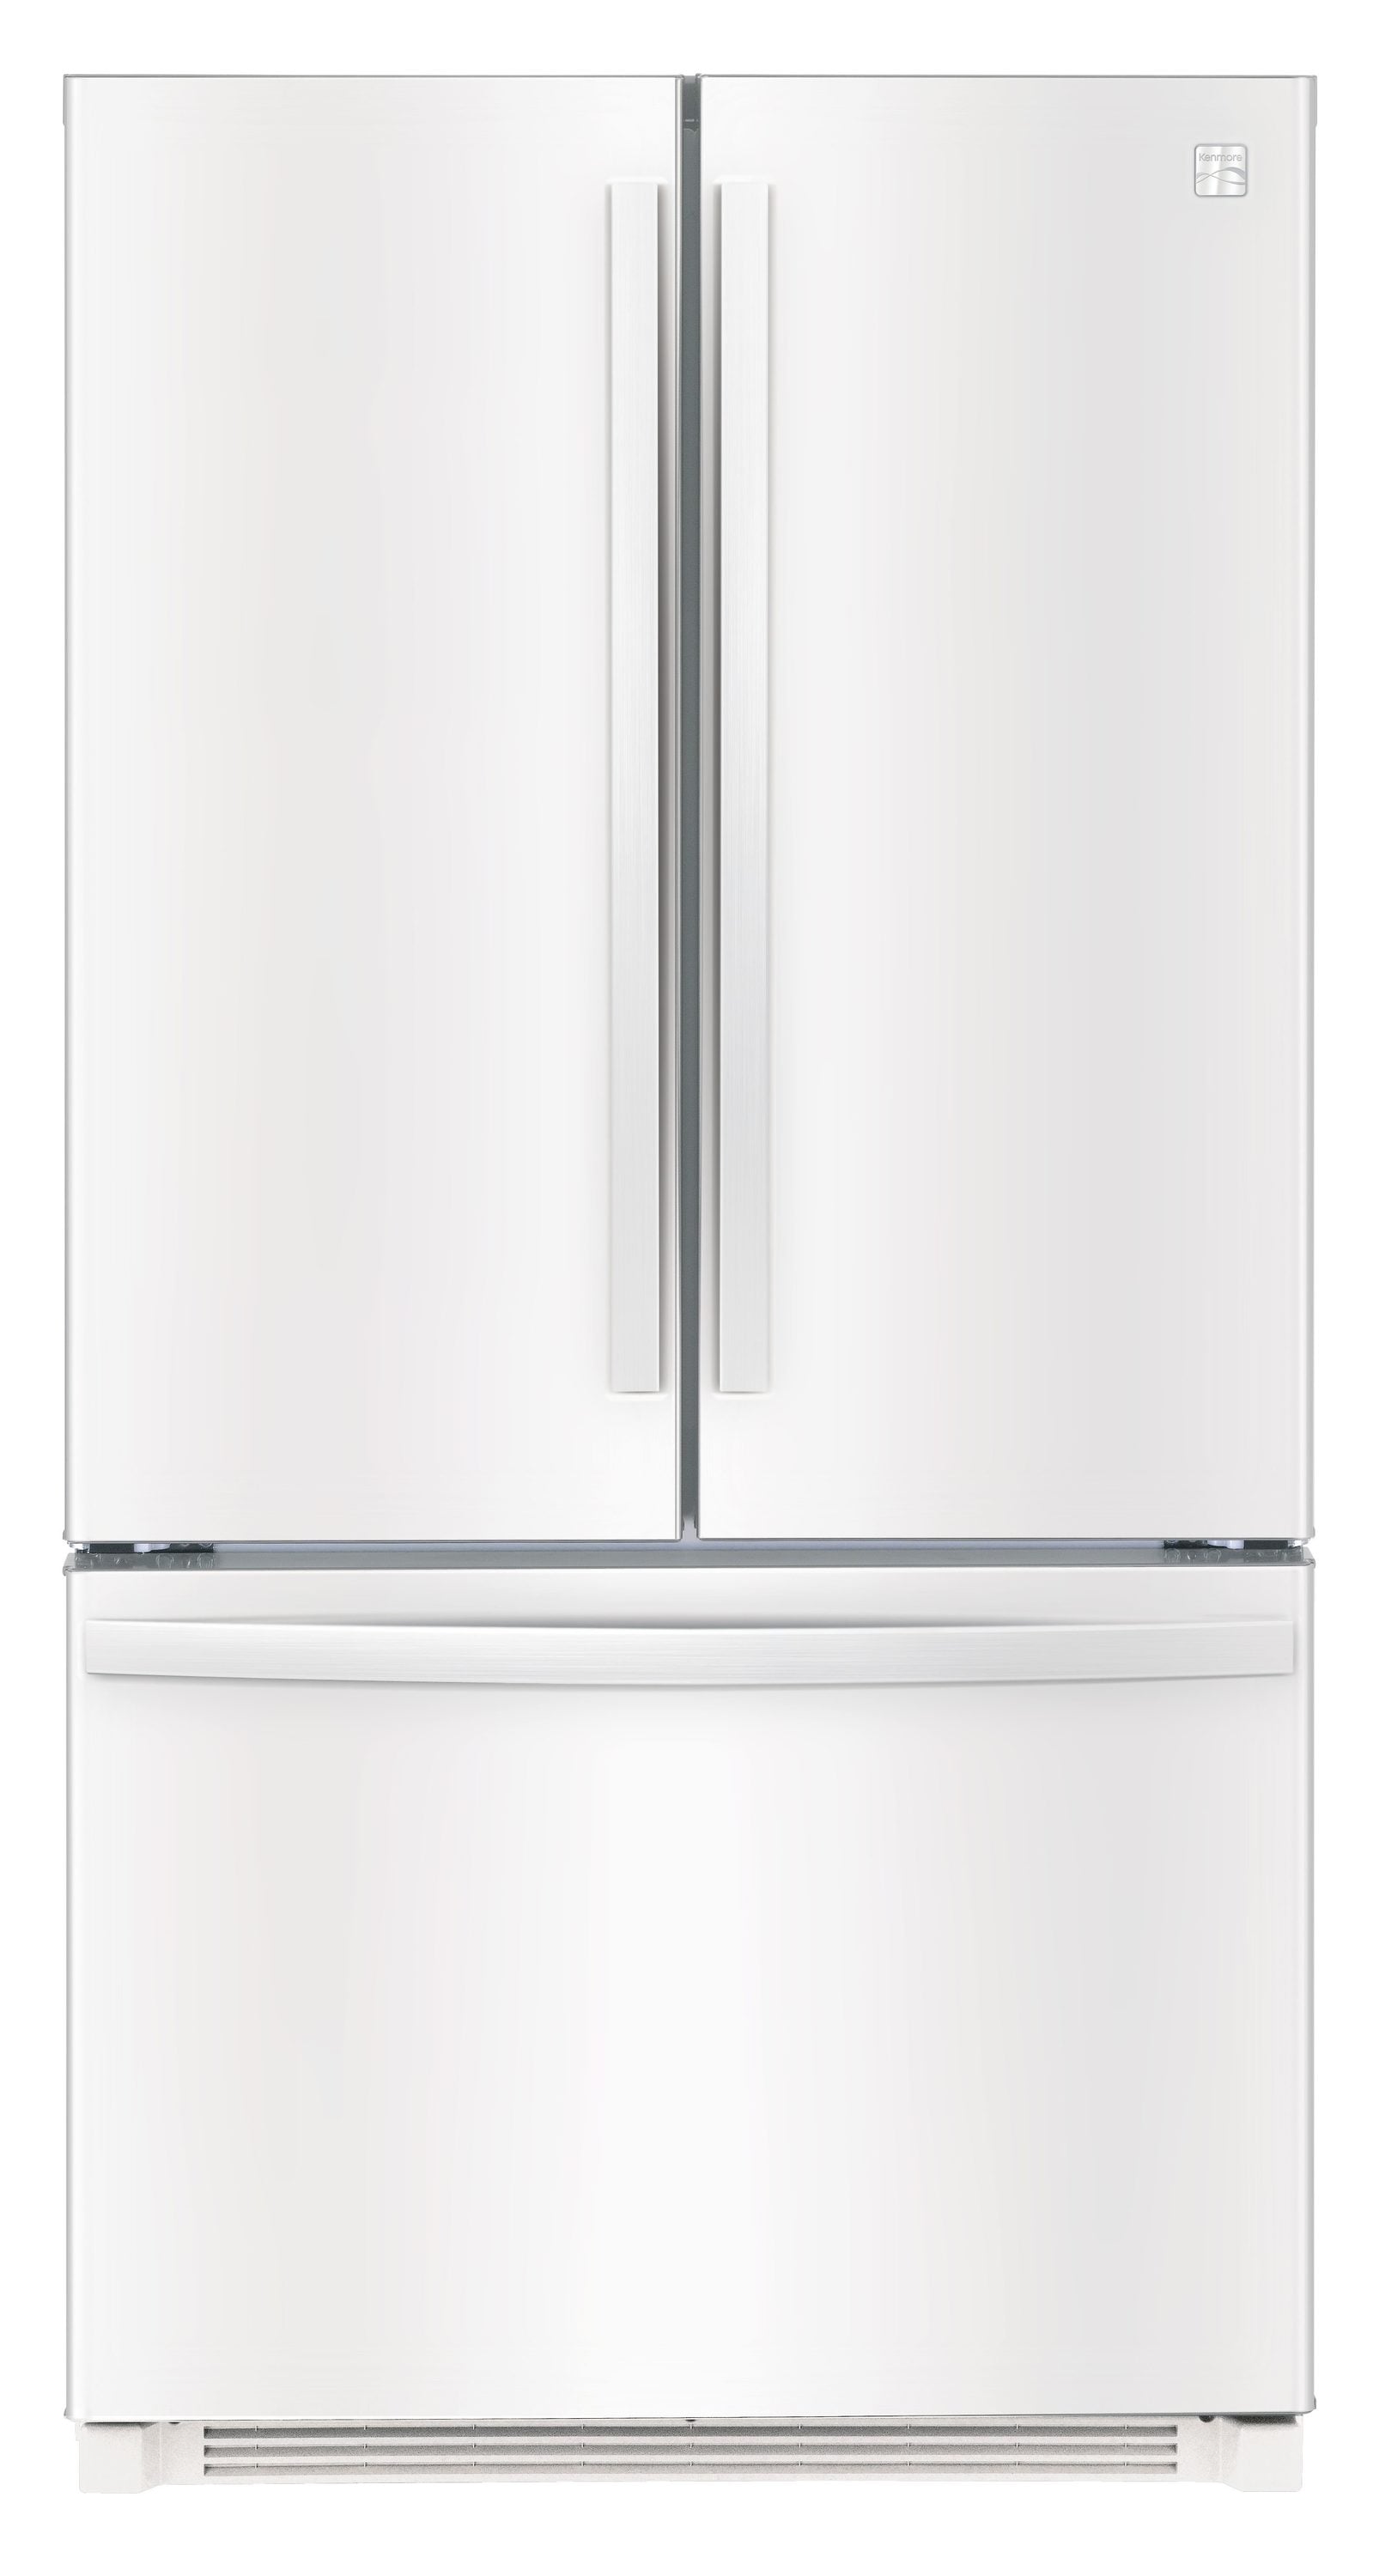 Kenmore 25.5-cu ft-Door French Door Refrigerator with Ice Maker (White) in the French Door Refrigerators department at Lowes.com